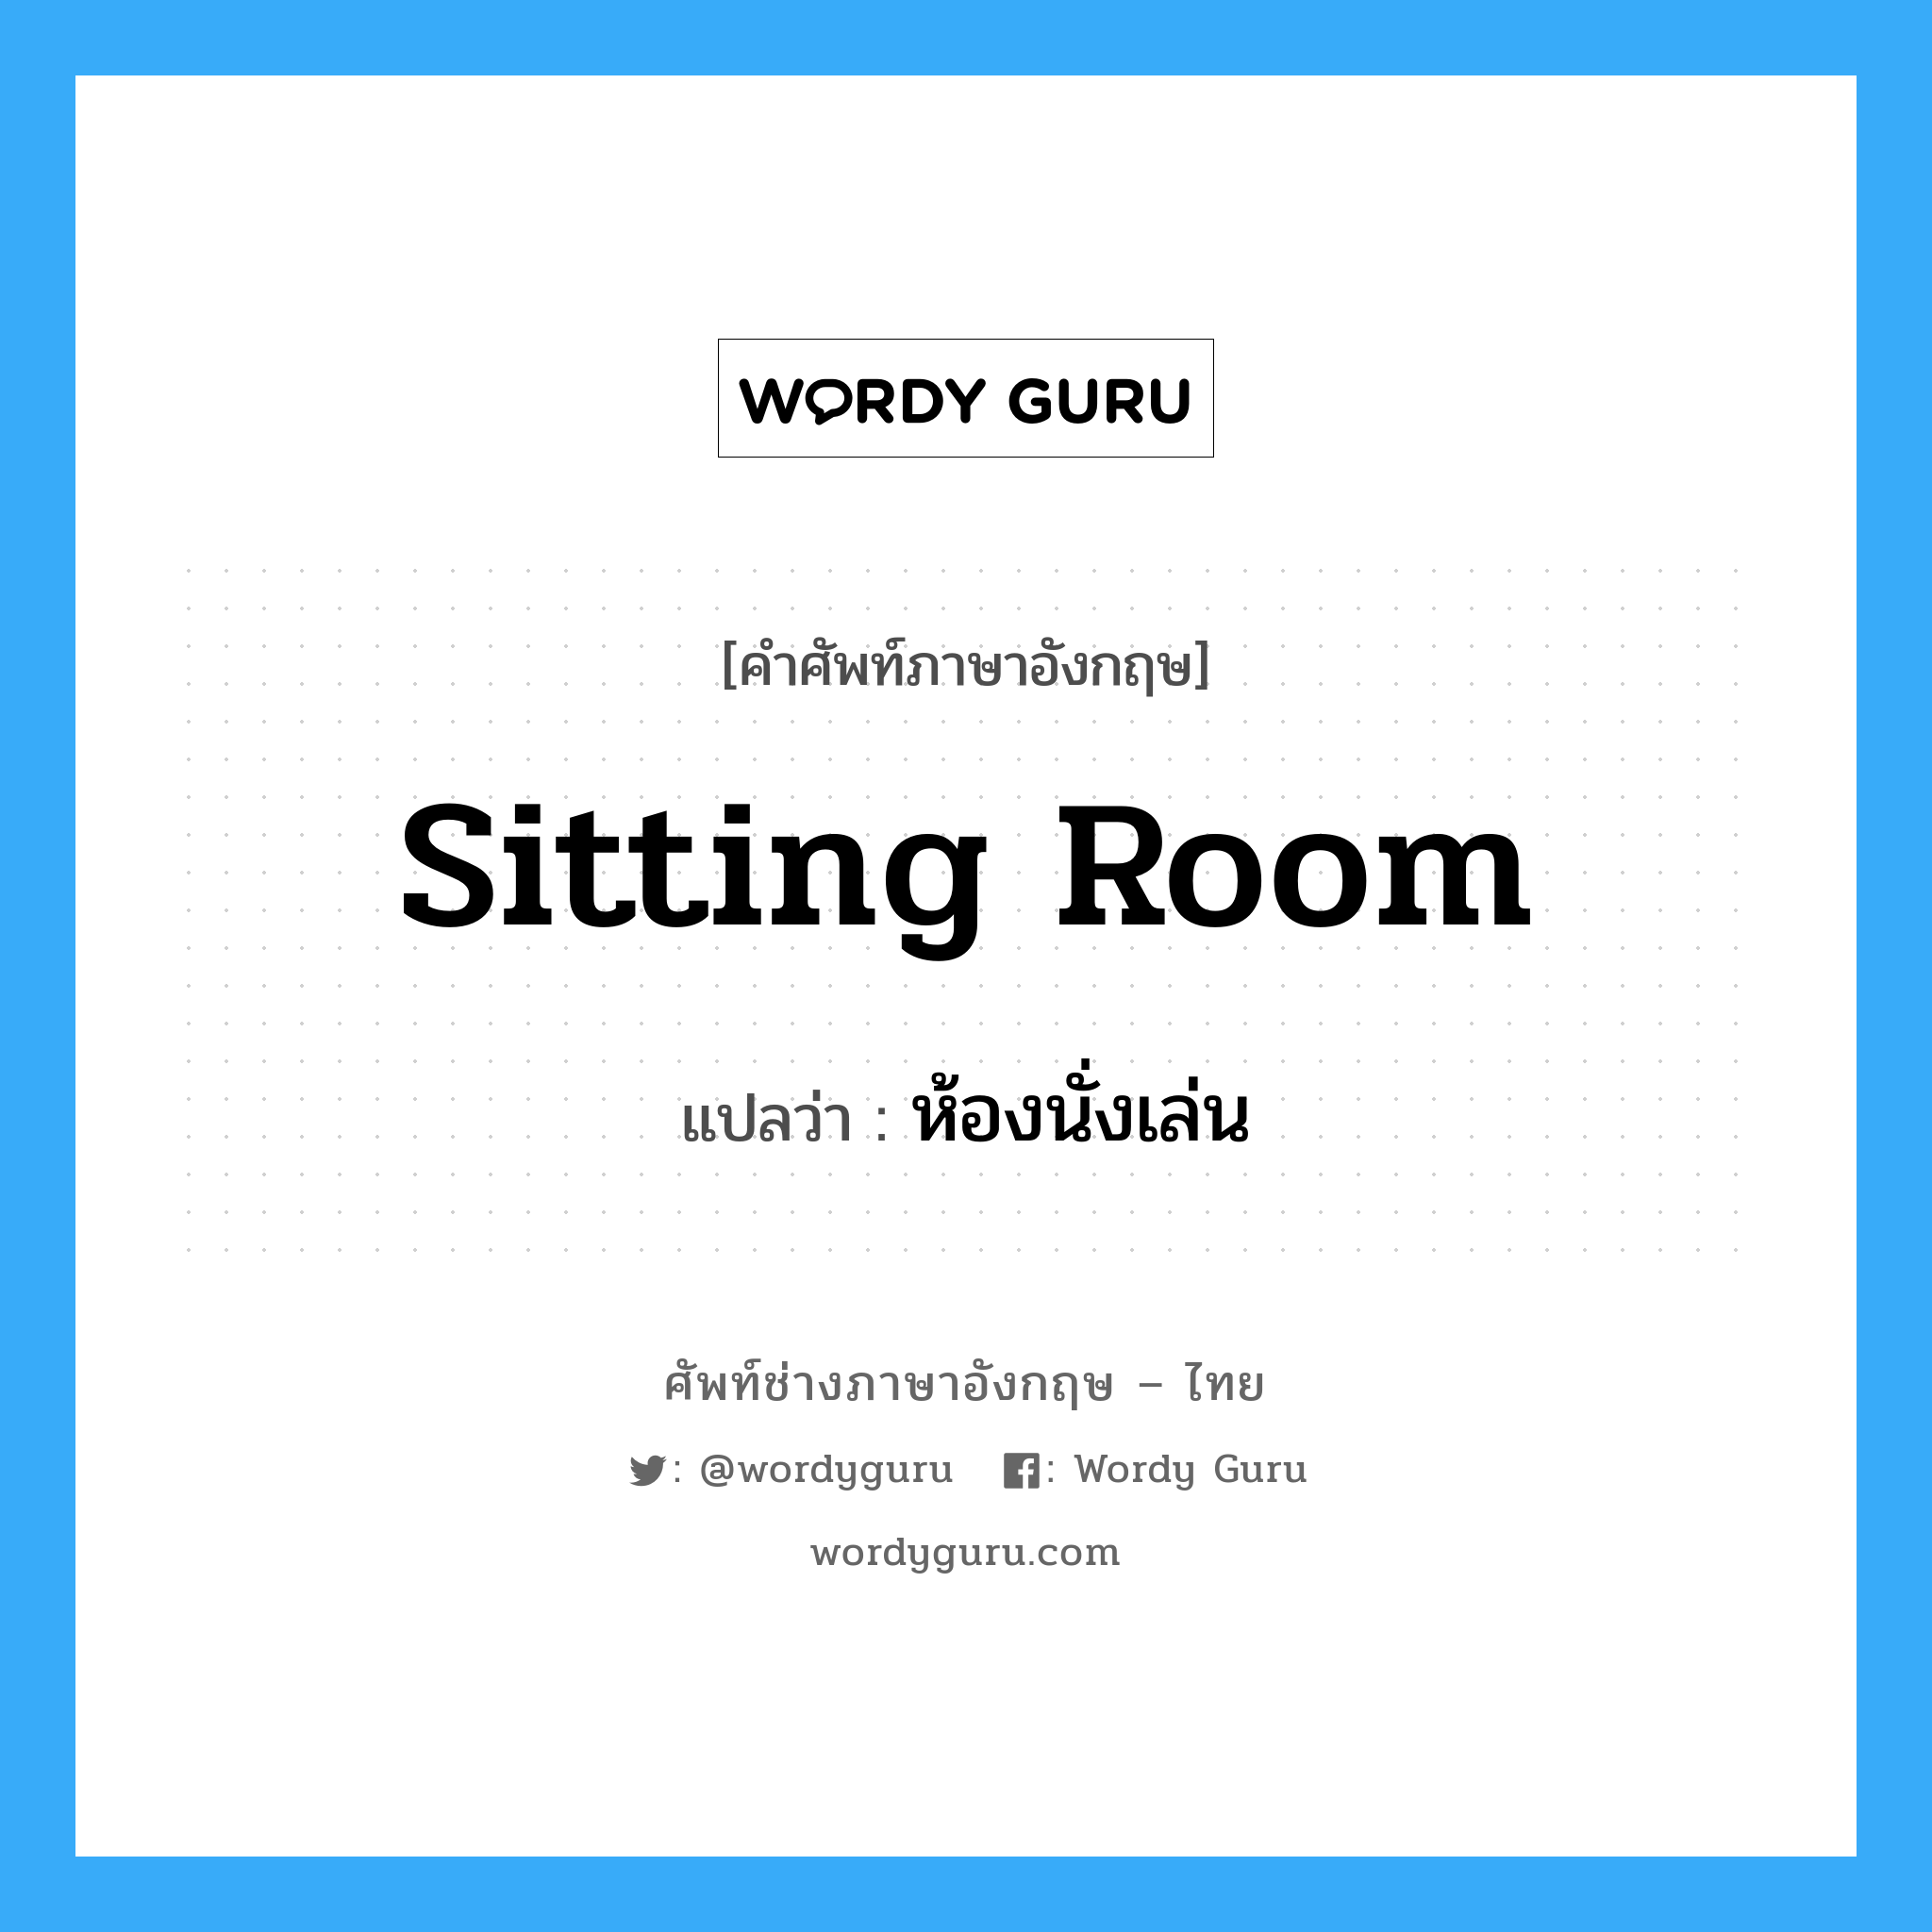 ห้องนั่งเล่น ภาษาอังกฤษ?, คำศัพท์ช่างภาษาอังกฤษ - ไทย ห้องนั่งเล่น คำศัพท์ภาษาอังกฤษ ห้องนั่งเล่น แปลว่า sitting room